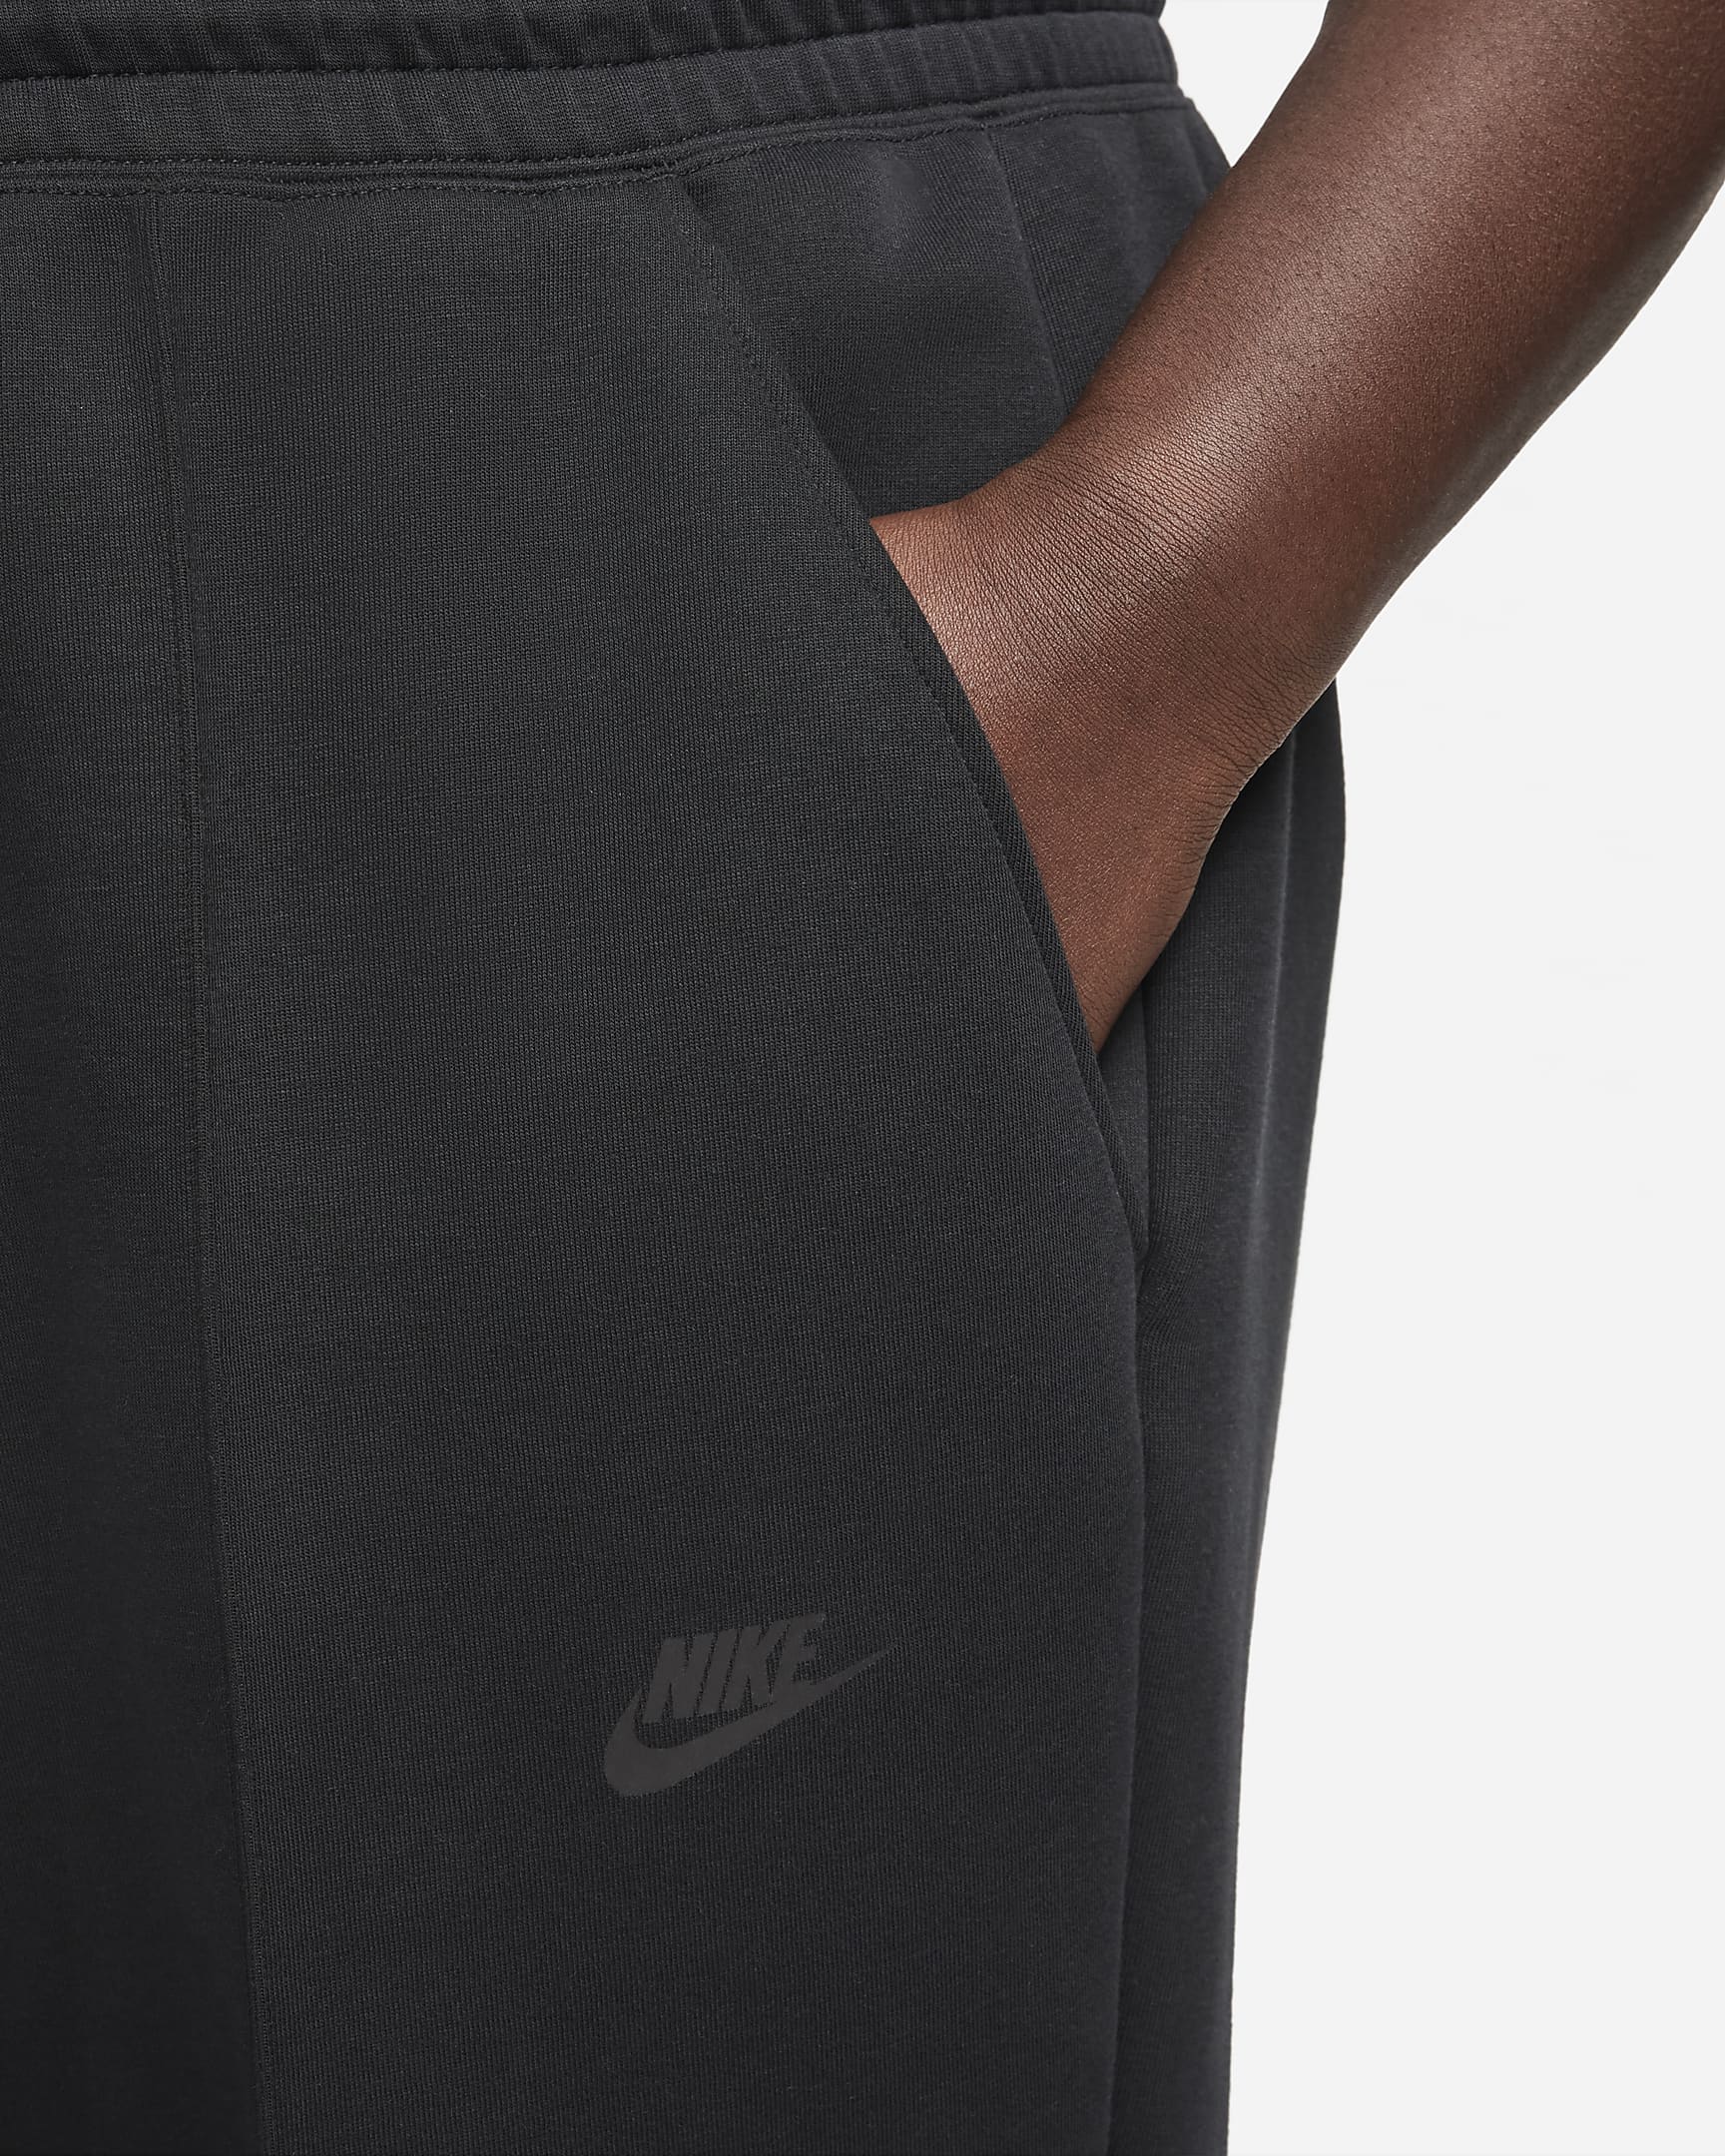 Nike Sportswear Tech Fleece Women's Mid-Rise Joggers (Plus Size). Nike CA